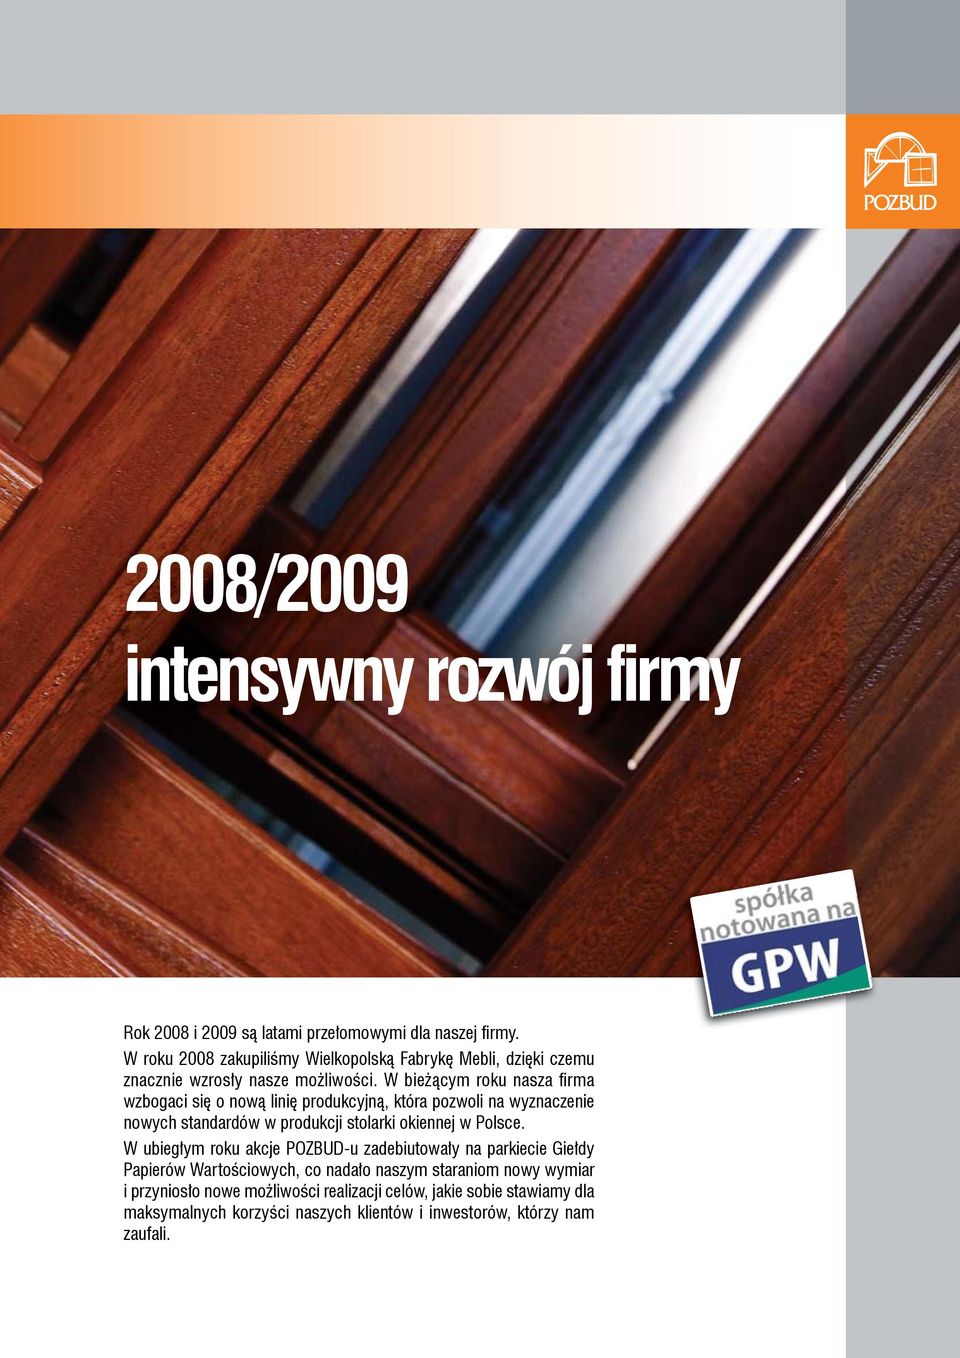 W bieżącym roku nasza fi rma wzbogaci się o nową linię produkcyjną, która pozwoli na wyznaczenie nowych standardów w produkcji stolarki okiennej w Polsce.